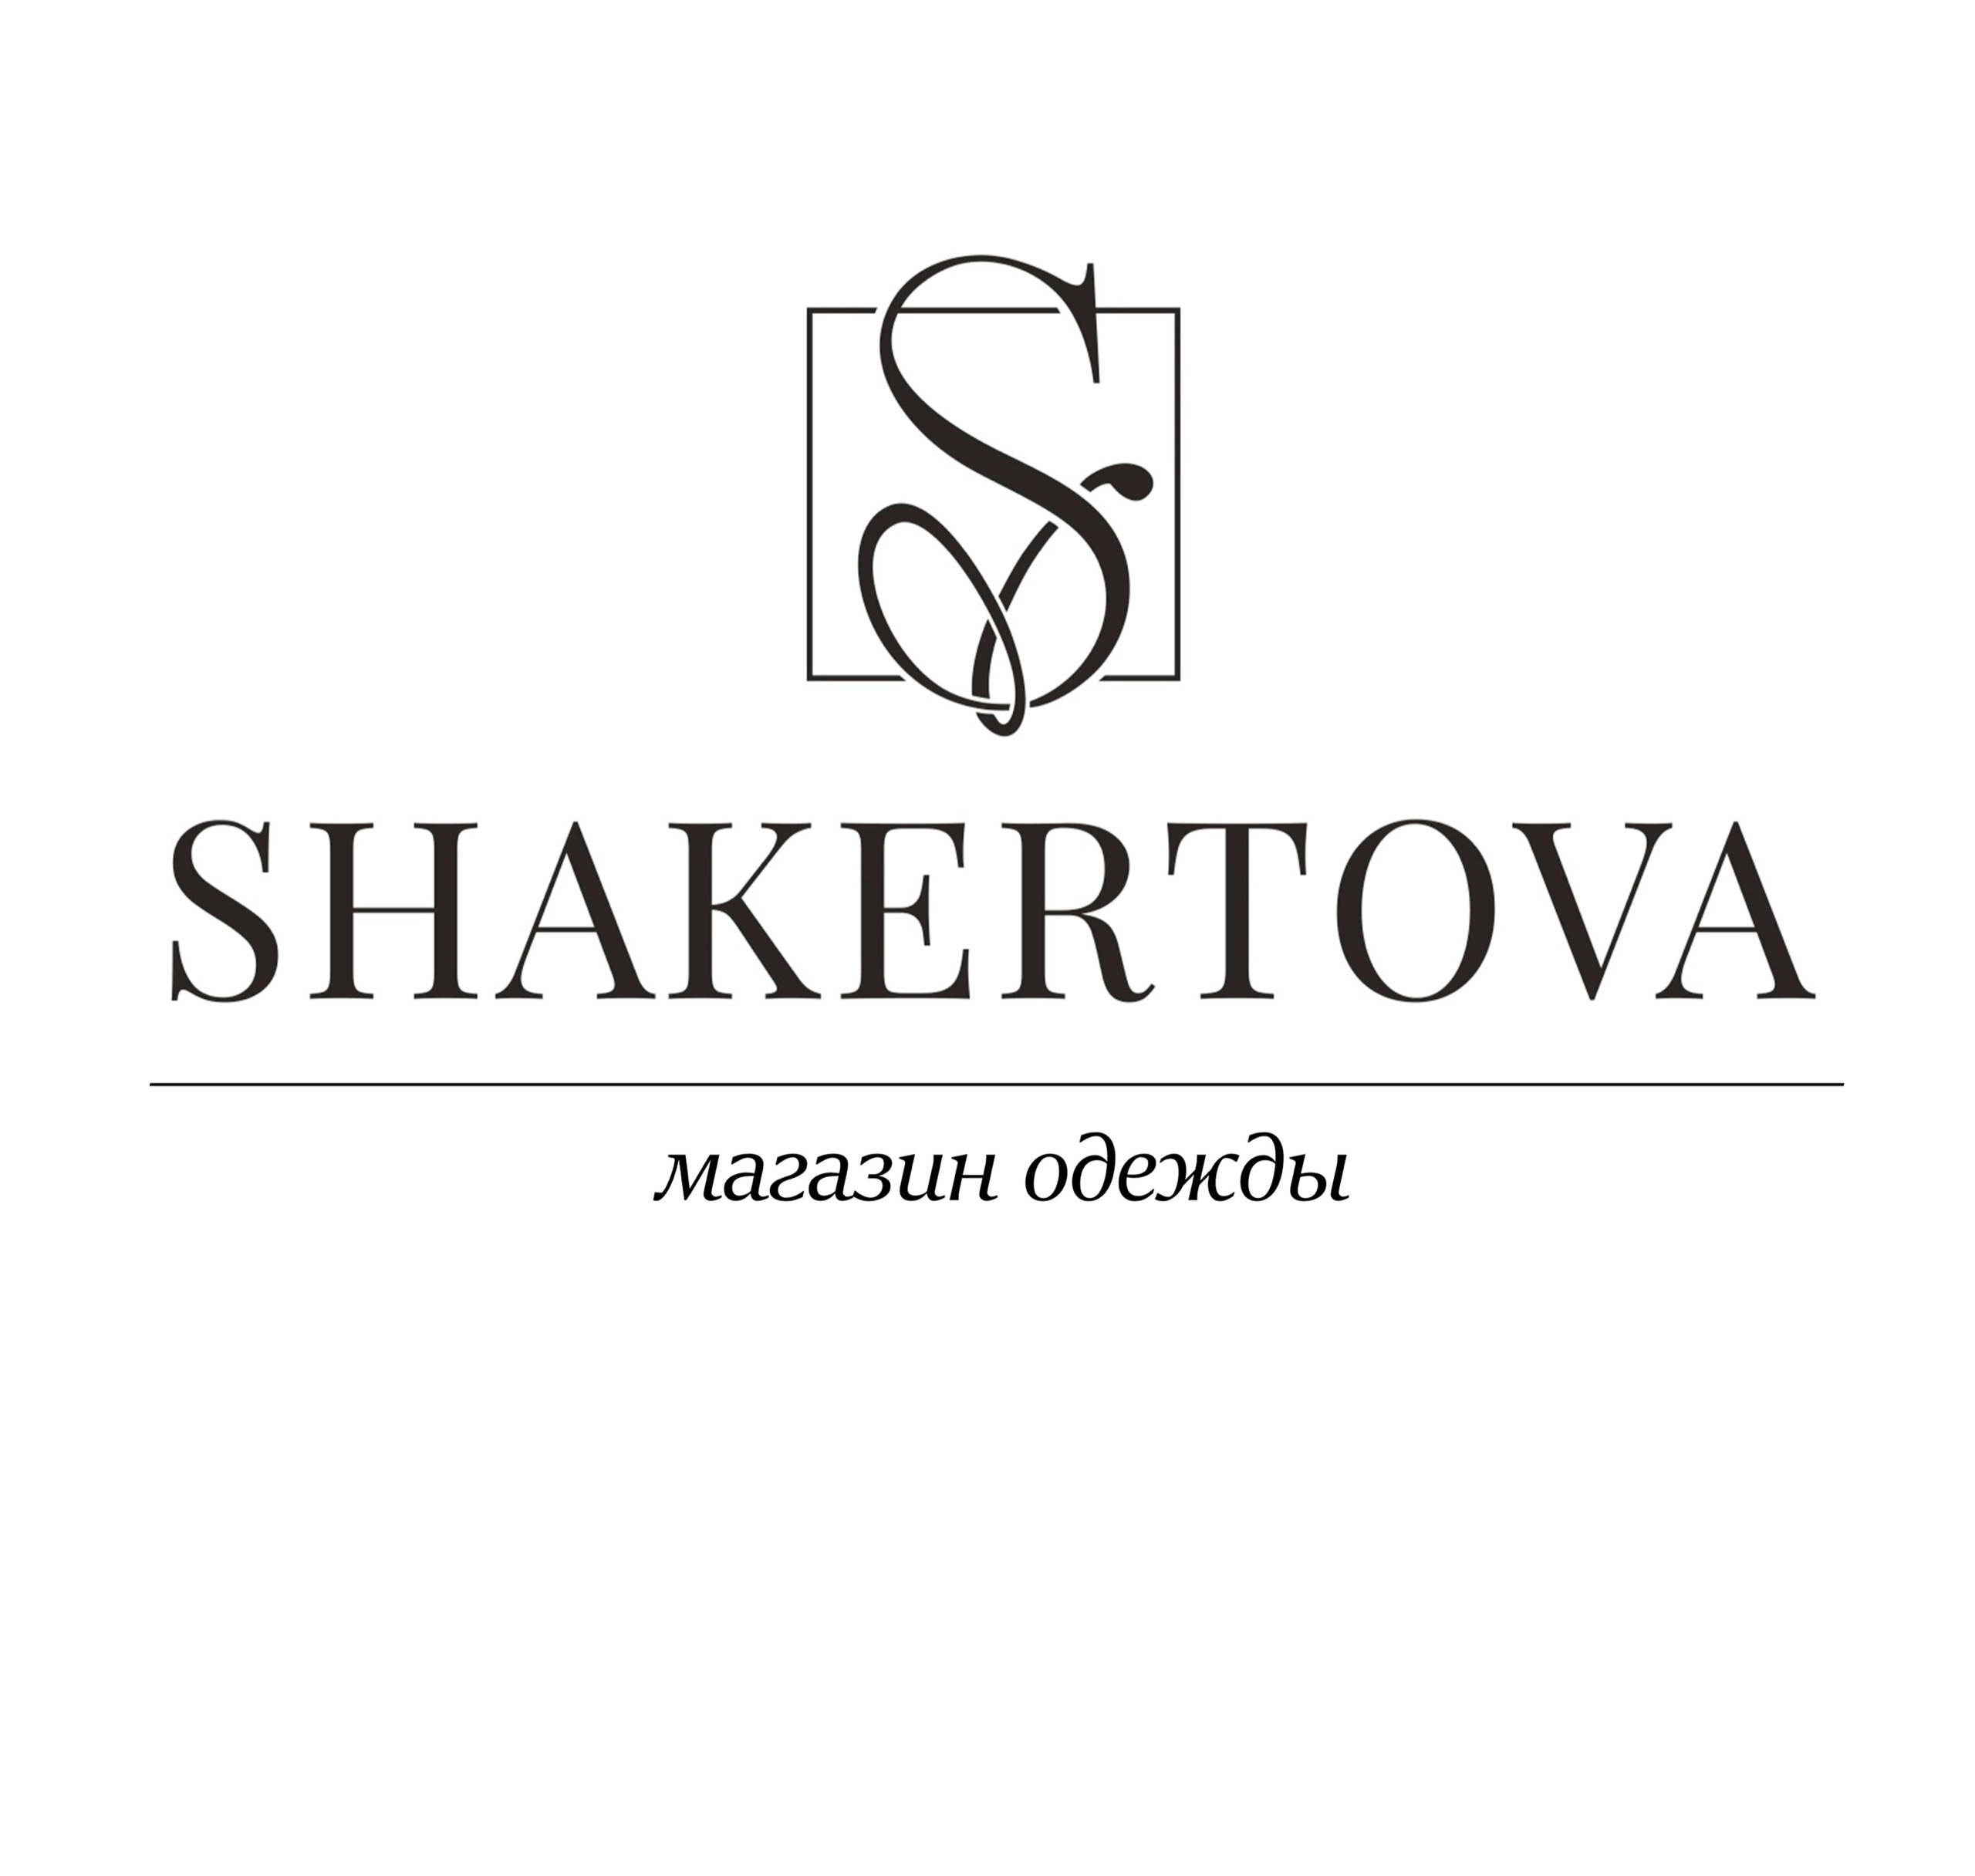 Shakertova